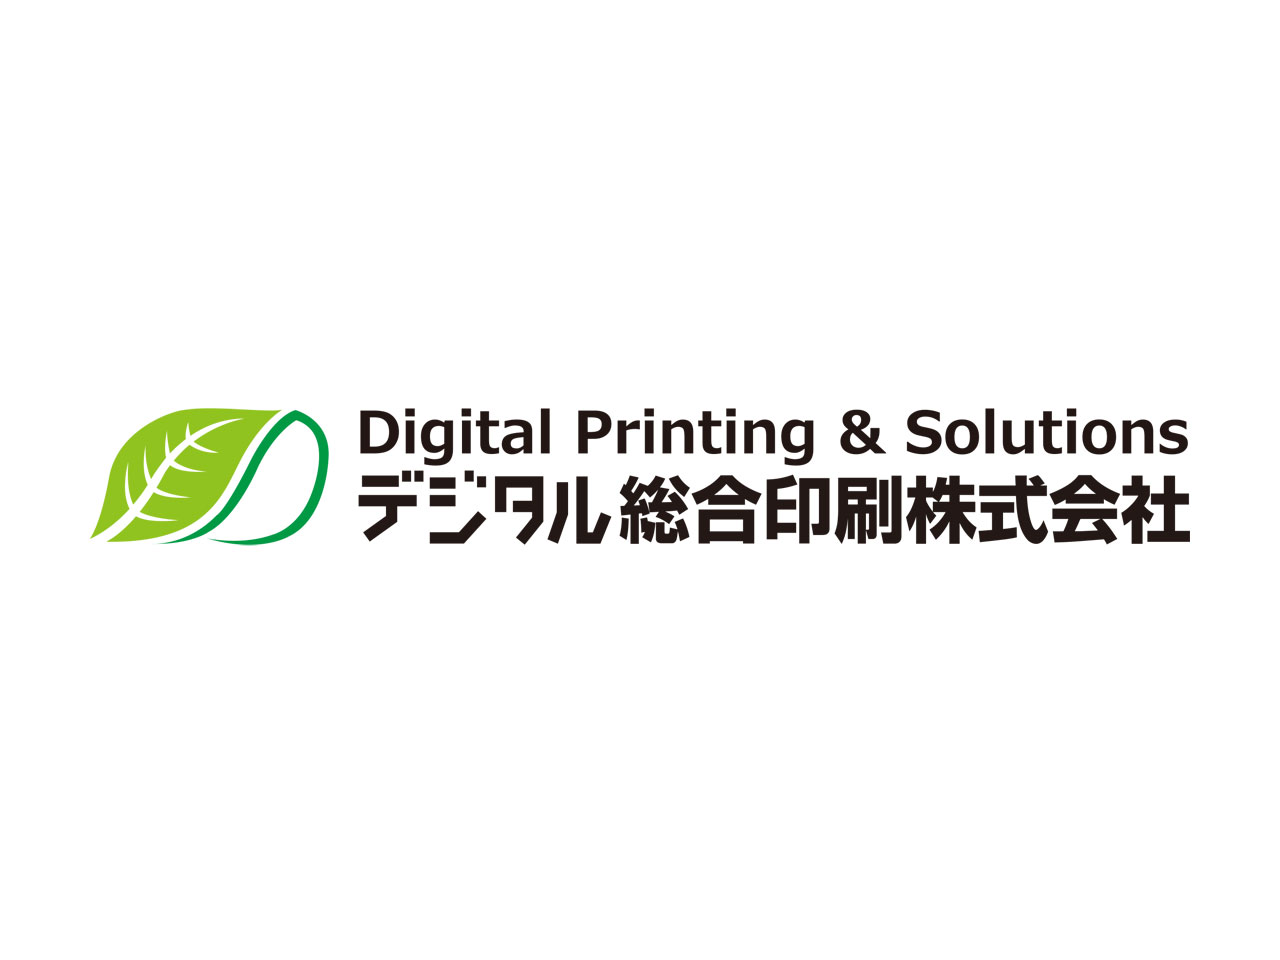 「印刷」と「DX」という2軸でビジネスを展開しているデジタル総合印刷株式会社。